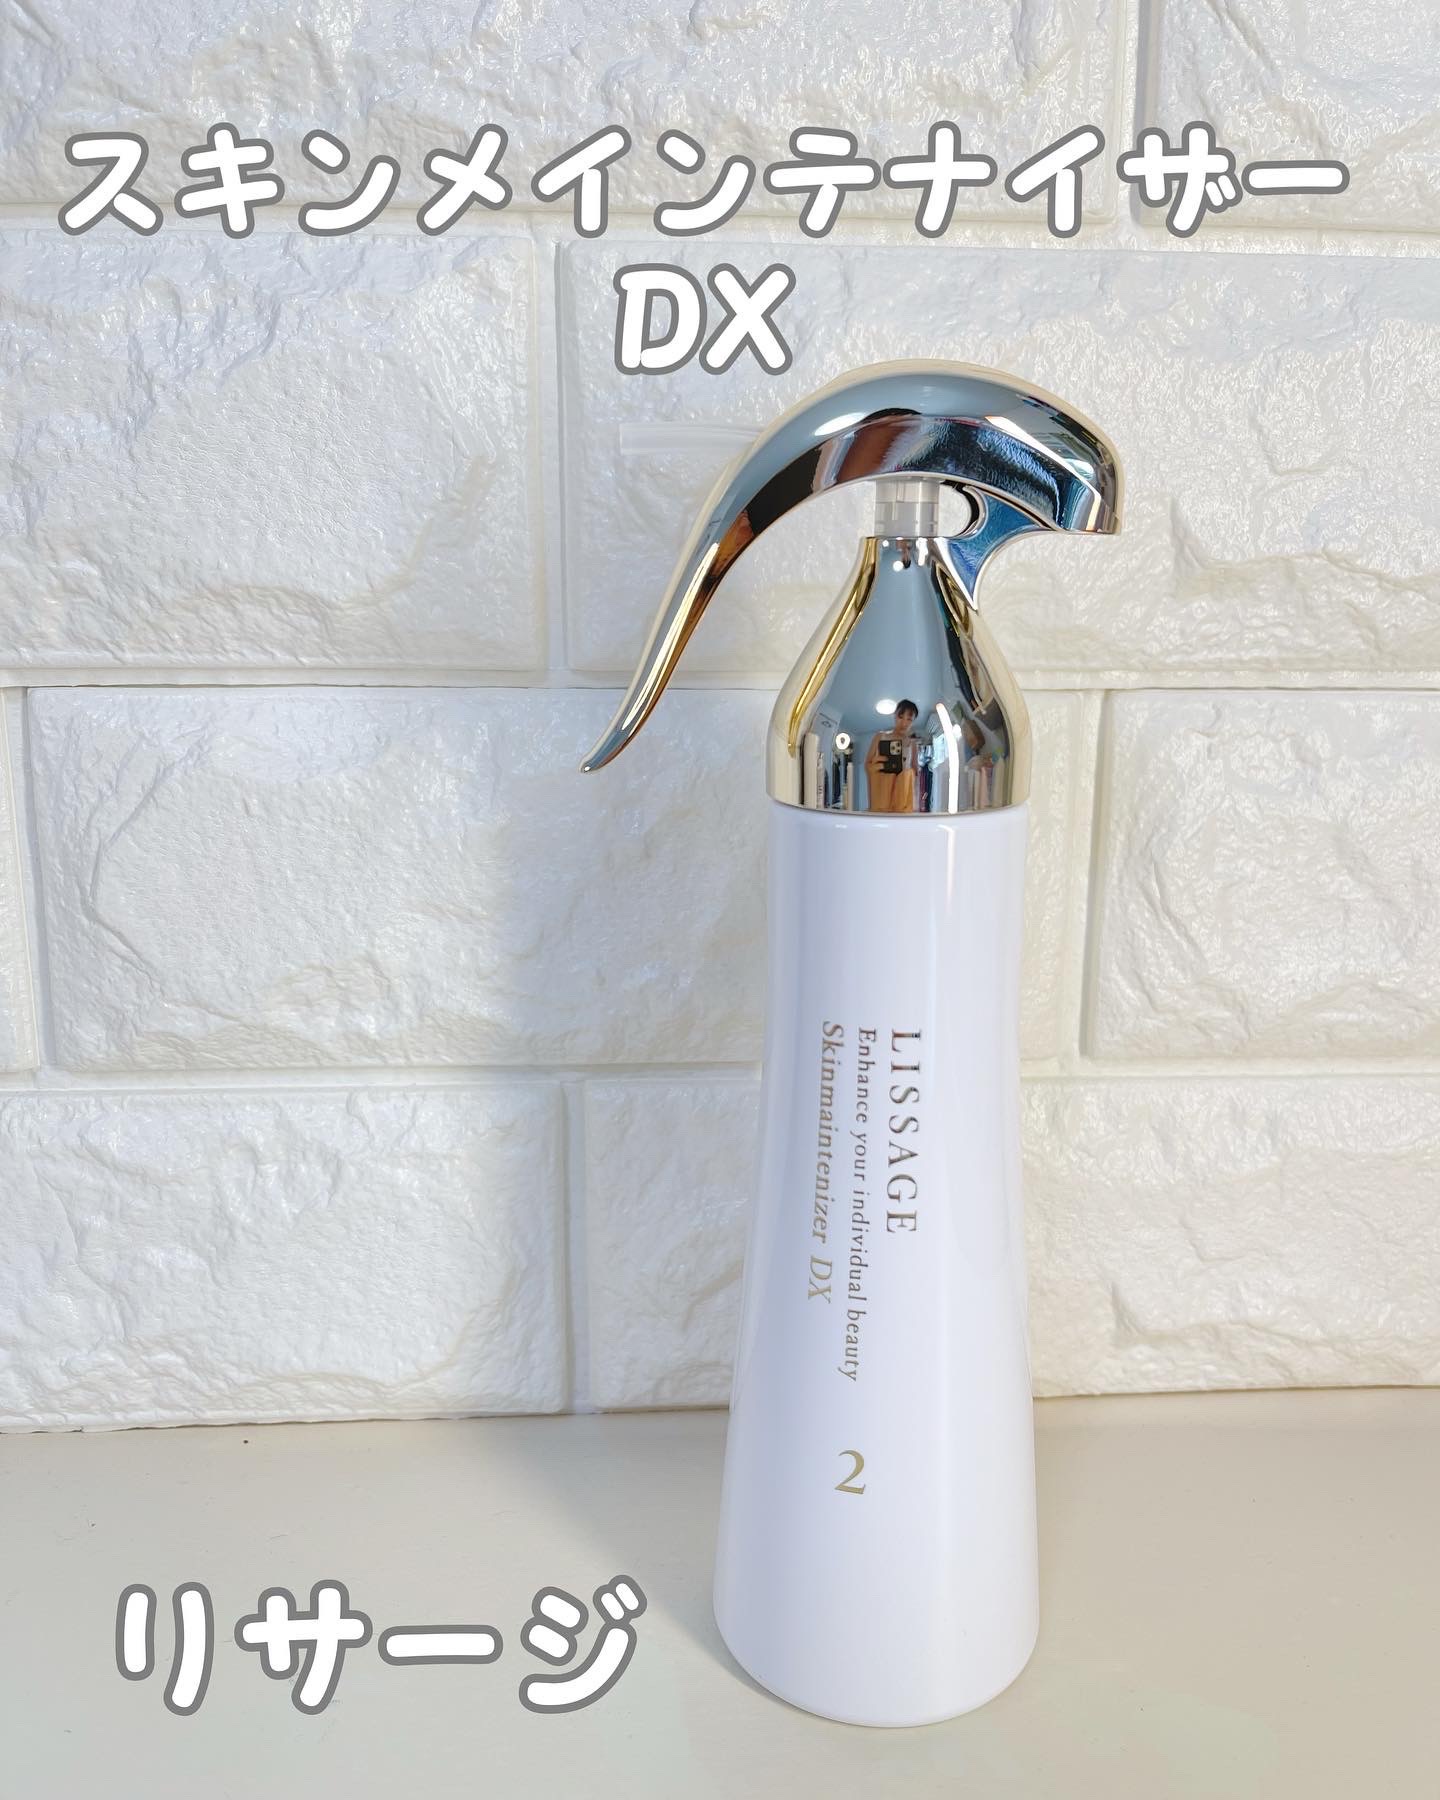 リサージスキンメンテナイザー DX2 箱無し - 基礎化粧品